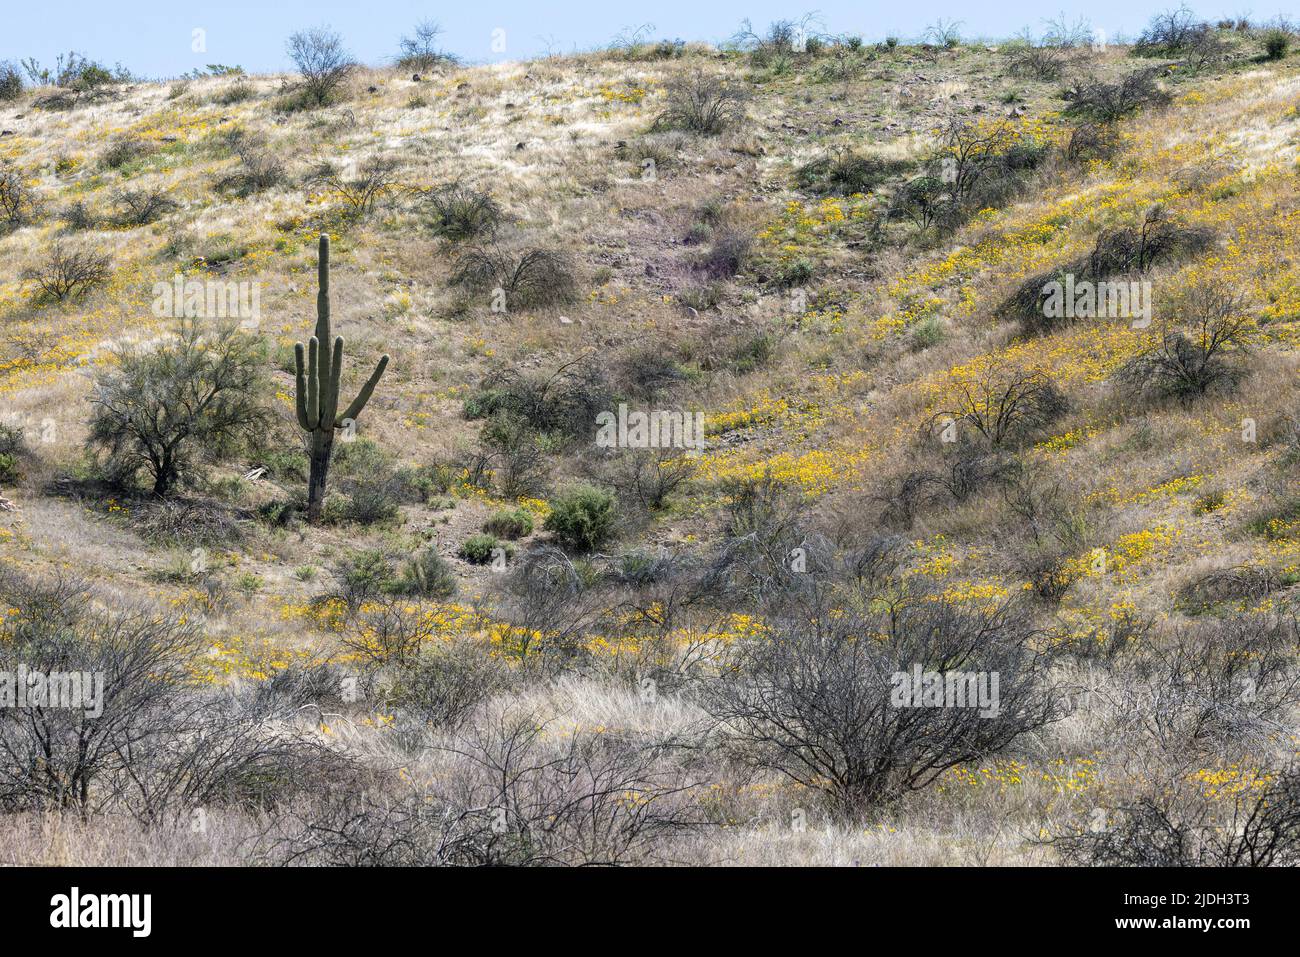 Coquelicot californien, coquelicot californien, coquelicot doré (Eschscholzia californica), population en fleurs sur une pente avec cactus Saguaro, Etats-Unis, Arizona, Sonoran Banque D'Images